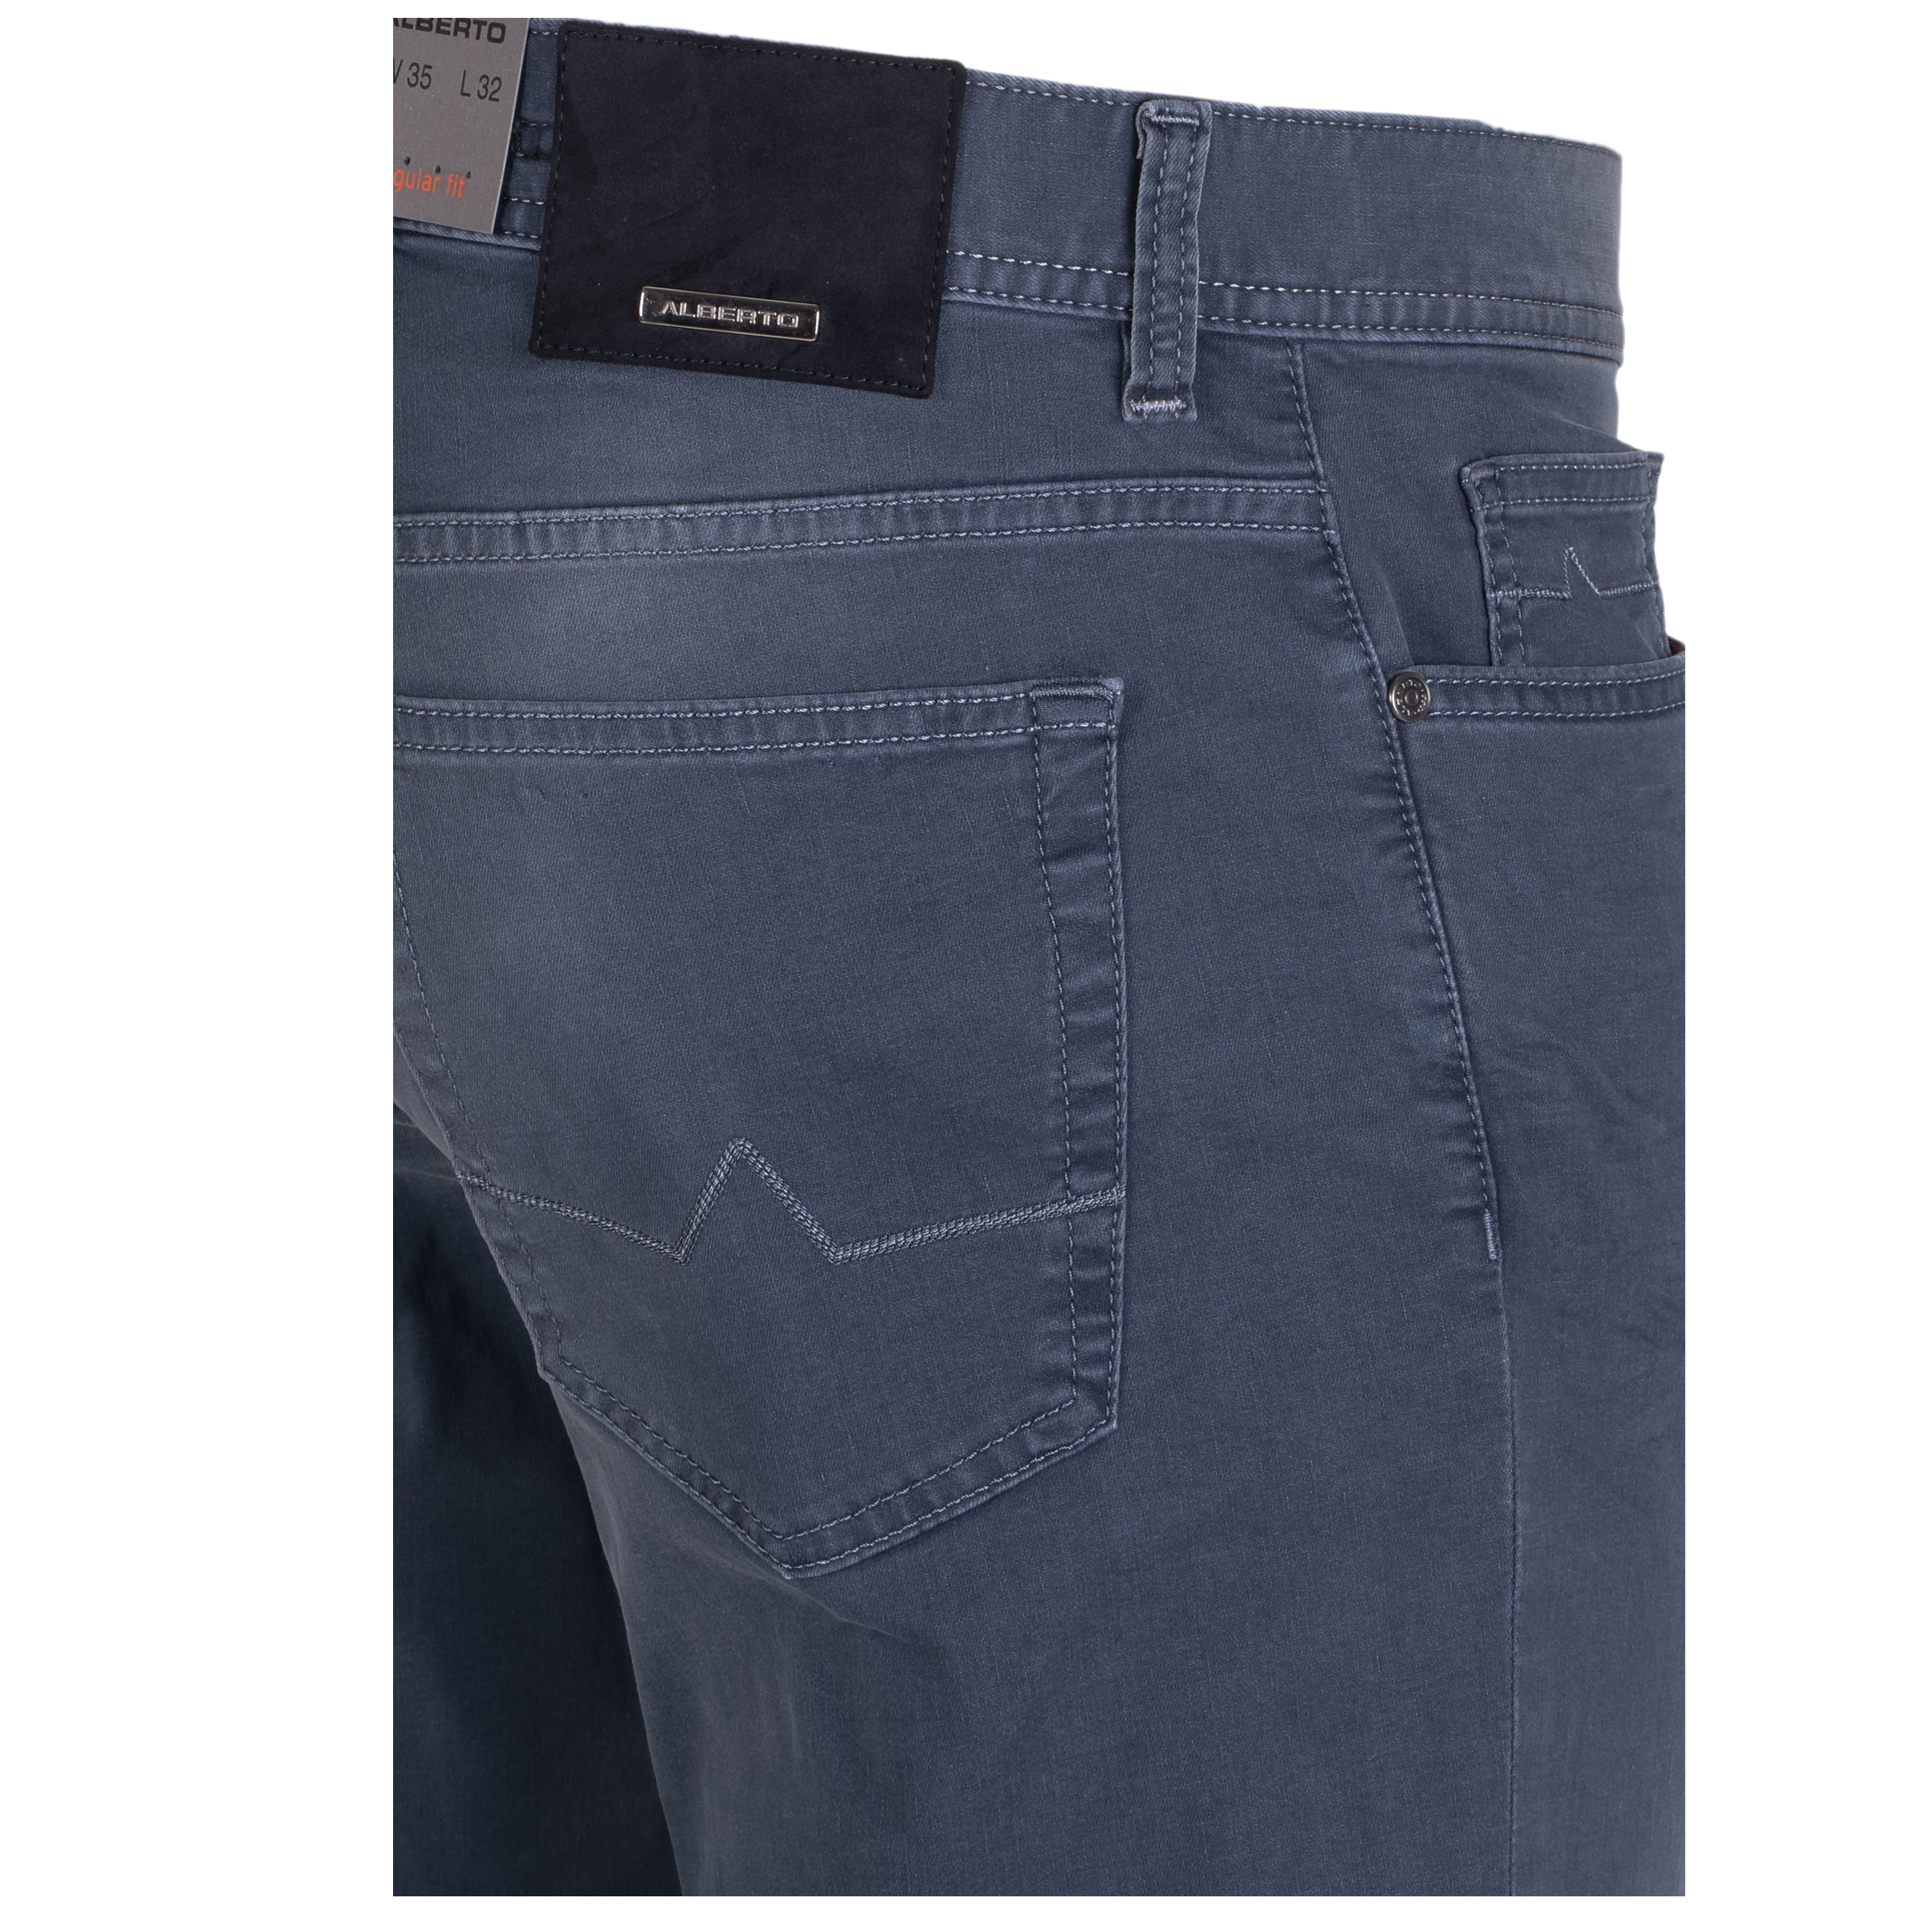 Alberto Jeans Pipe regular fit leichte Qualität 32/32 grau